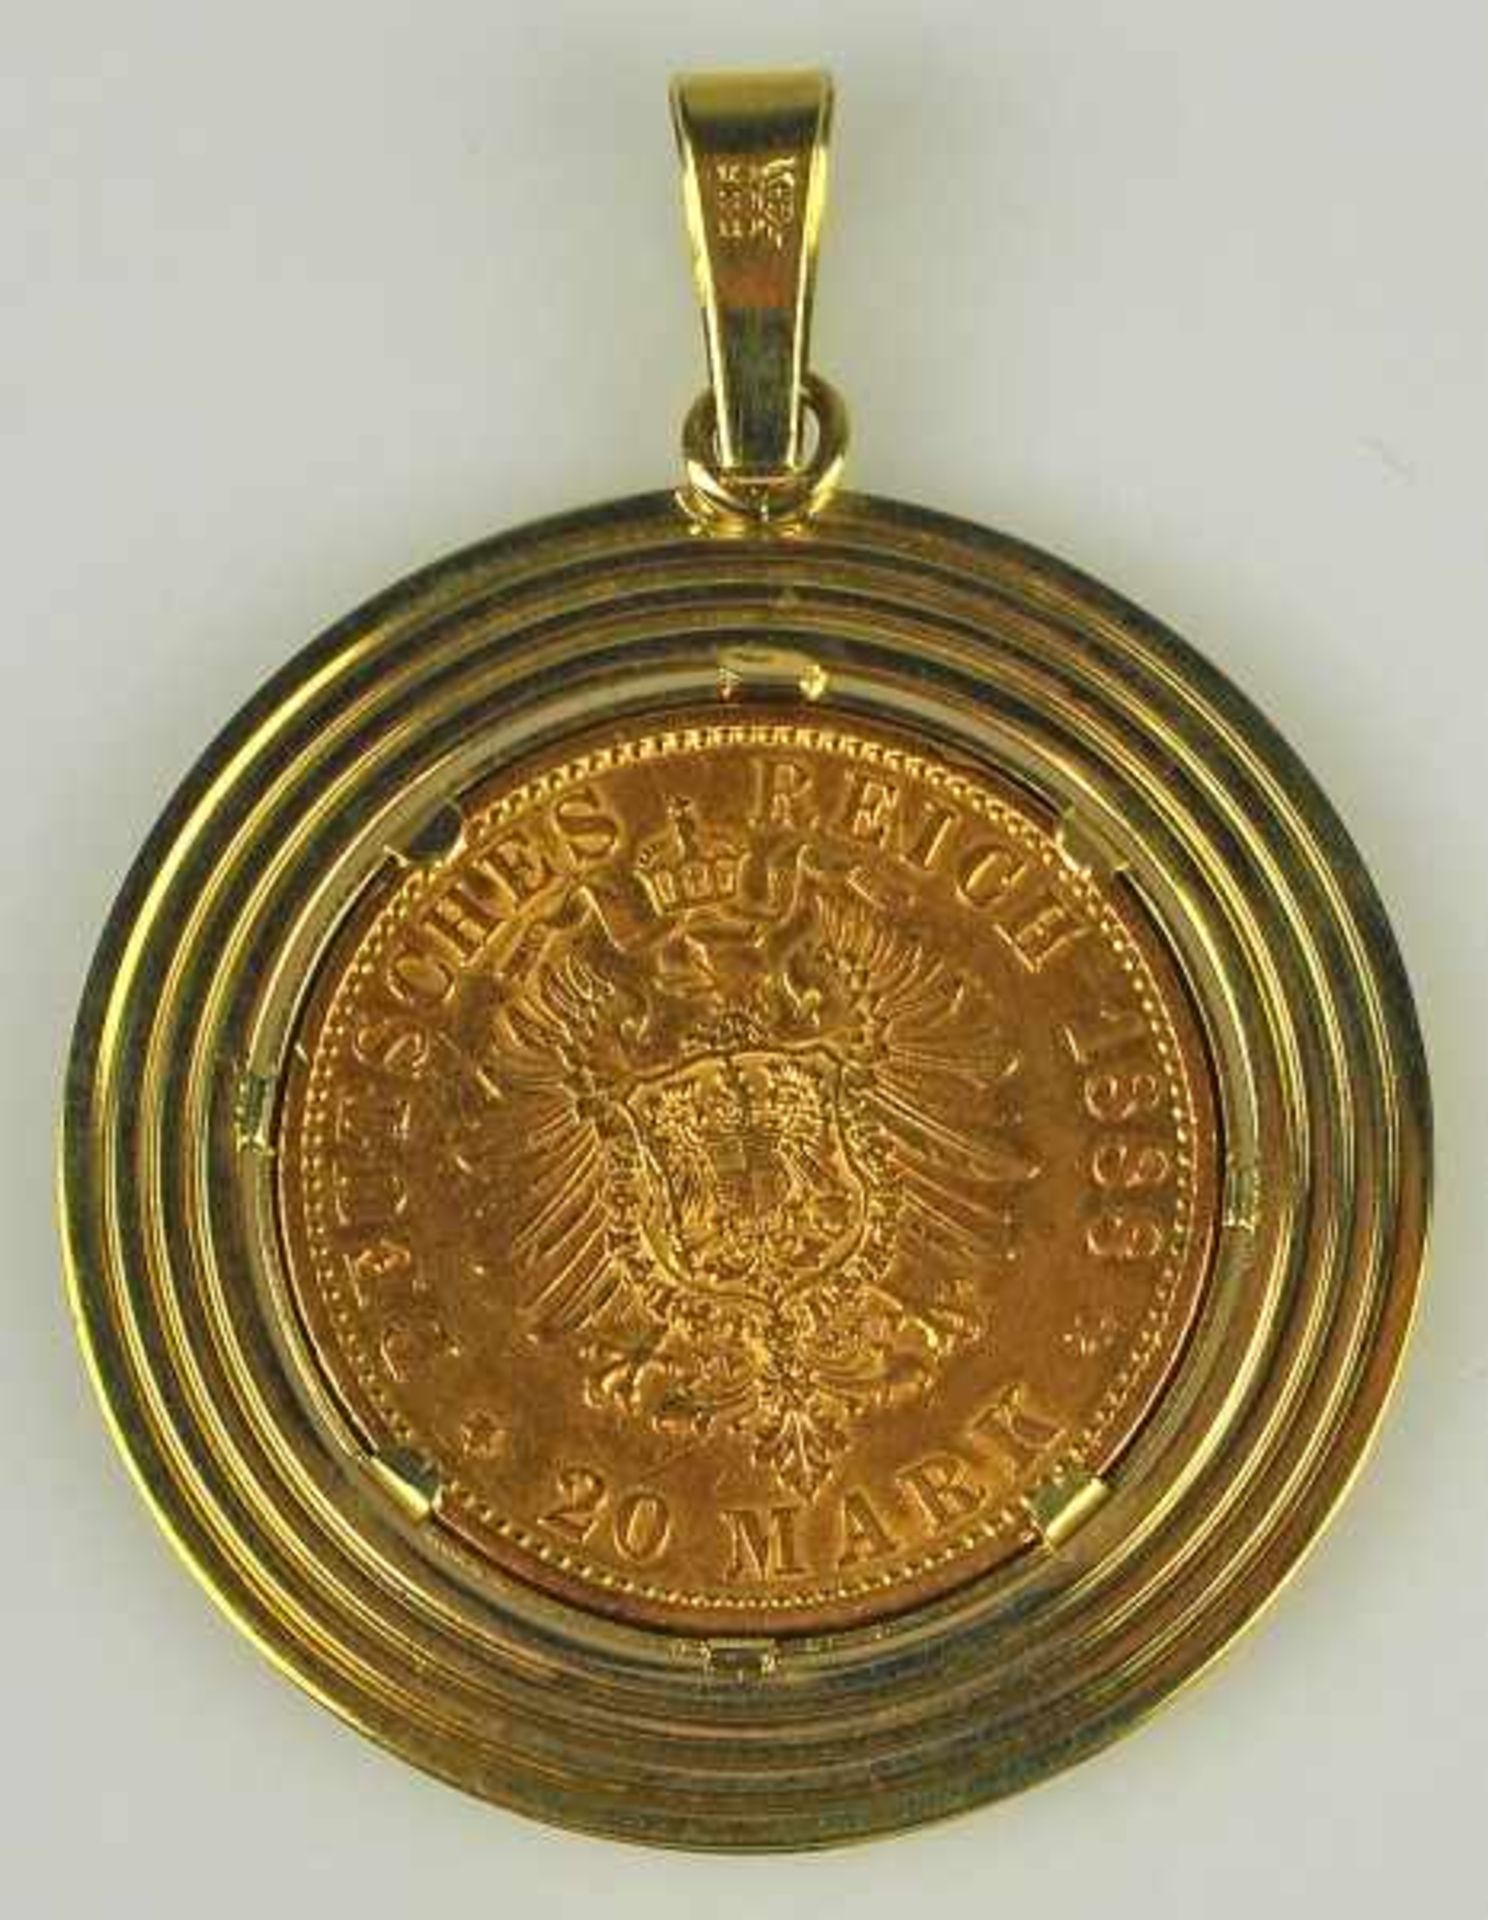 MÜNZANHÄNGER Goldmünze 20 Mark, Friedrich, Deutsches Reich 1888 in Goldfassung 14ct, gesamt 13,45g D - Bild 2 aus 2